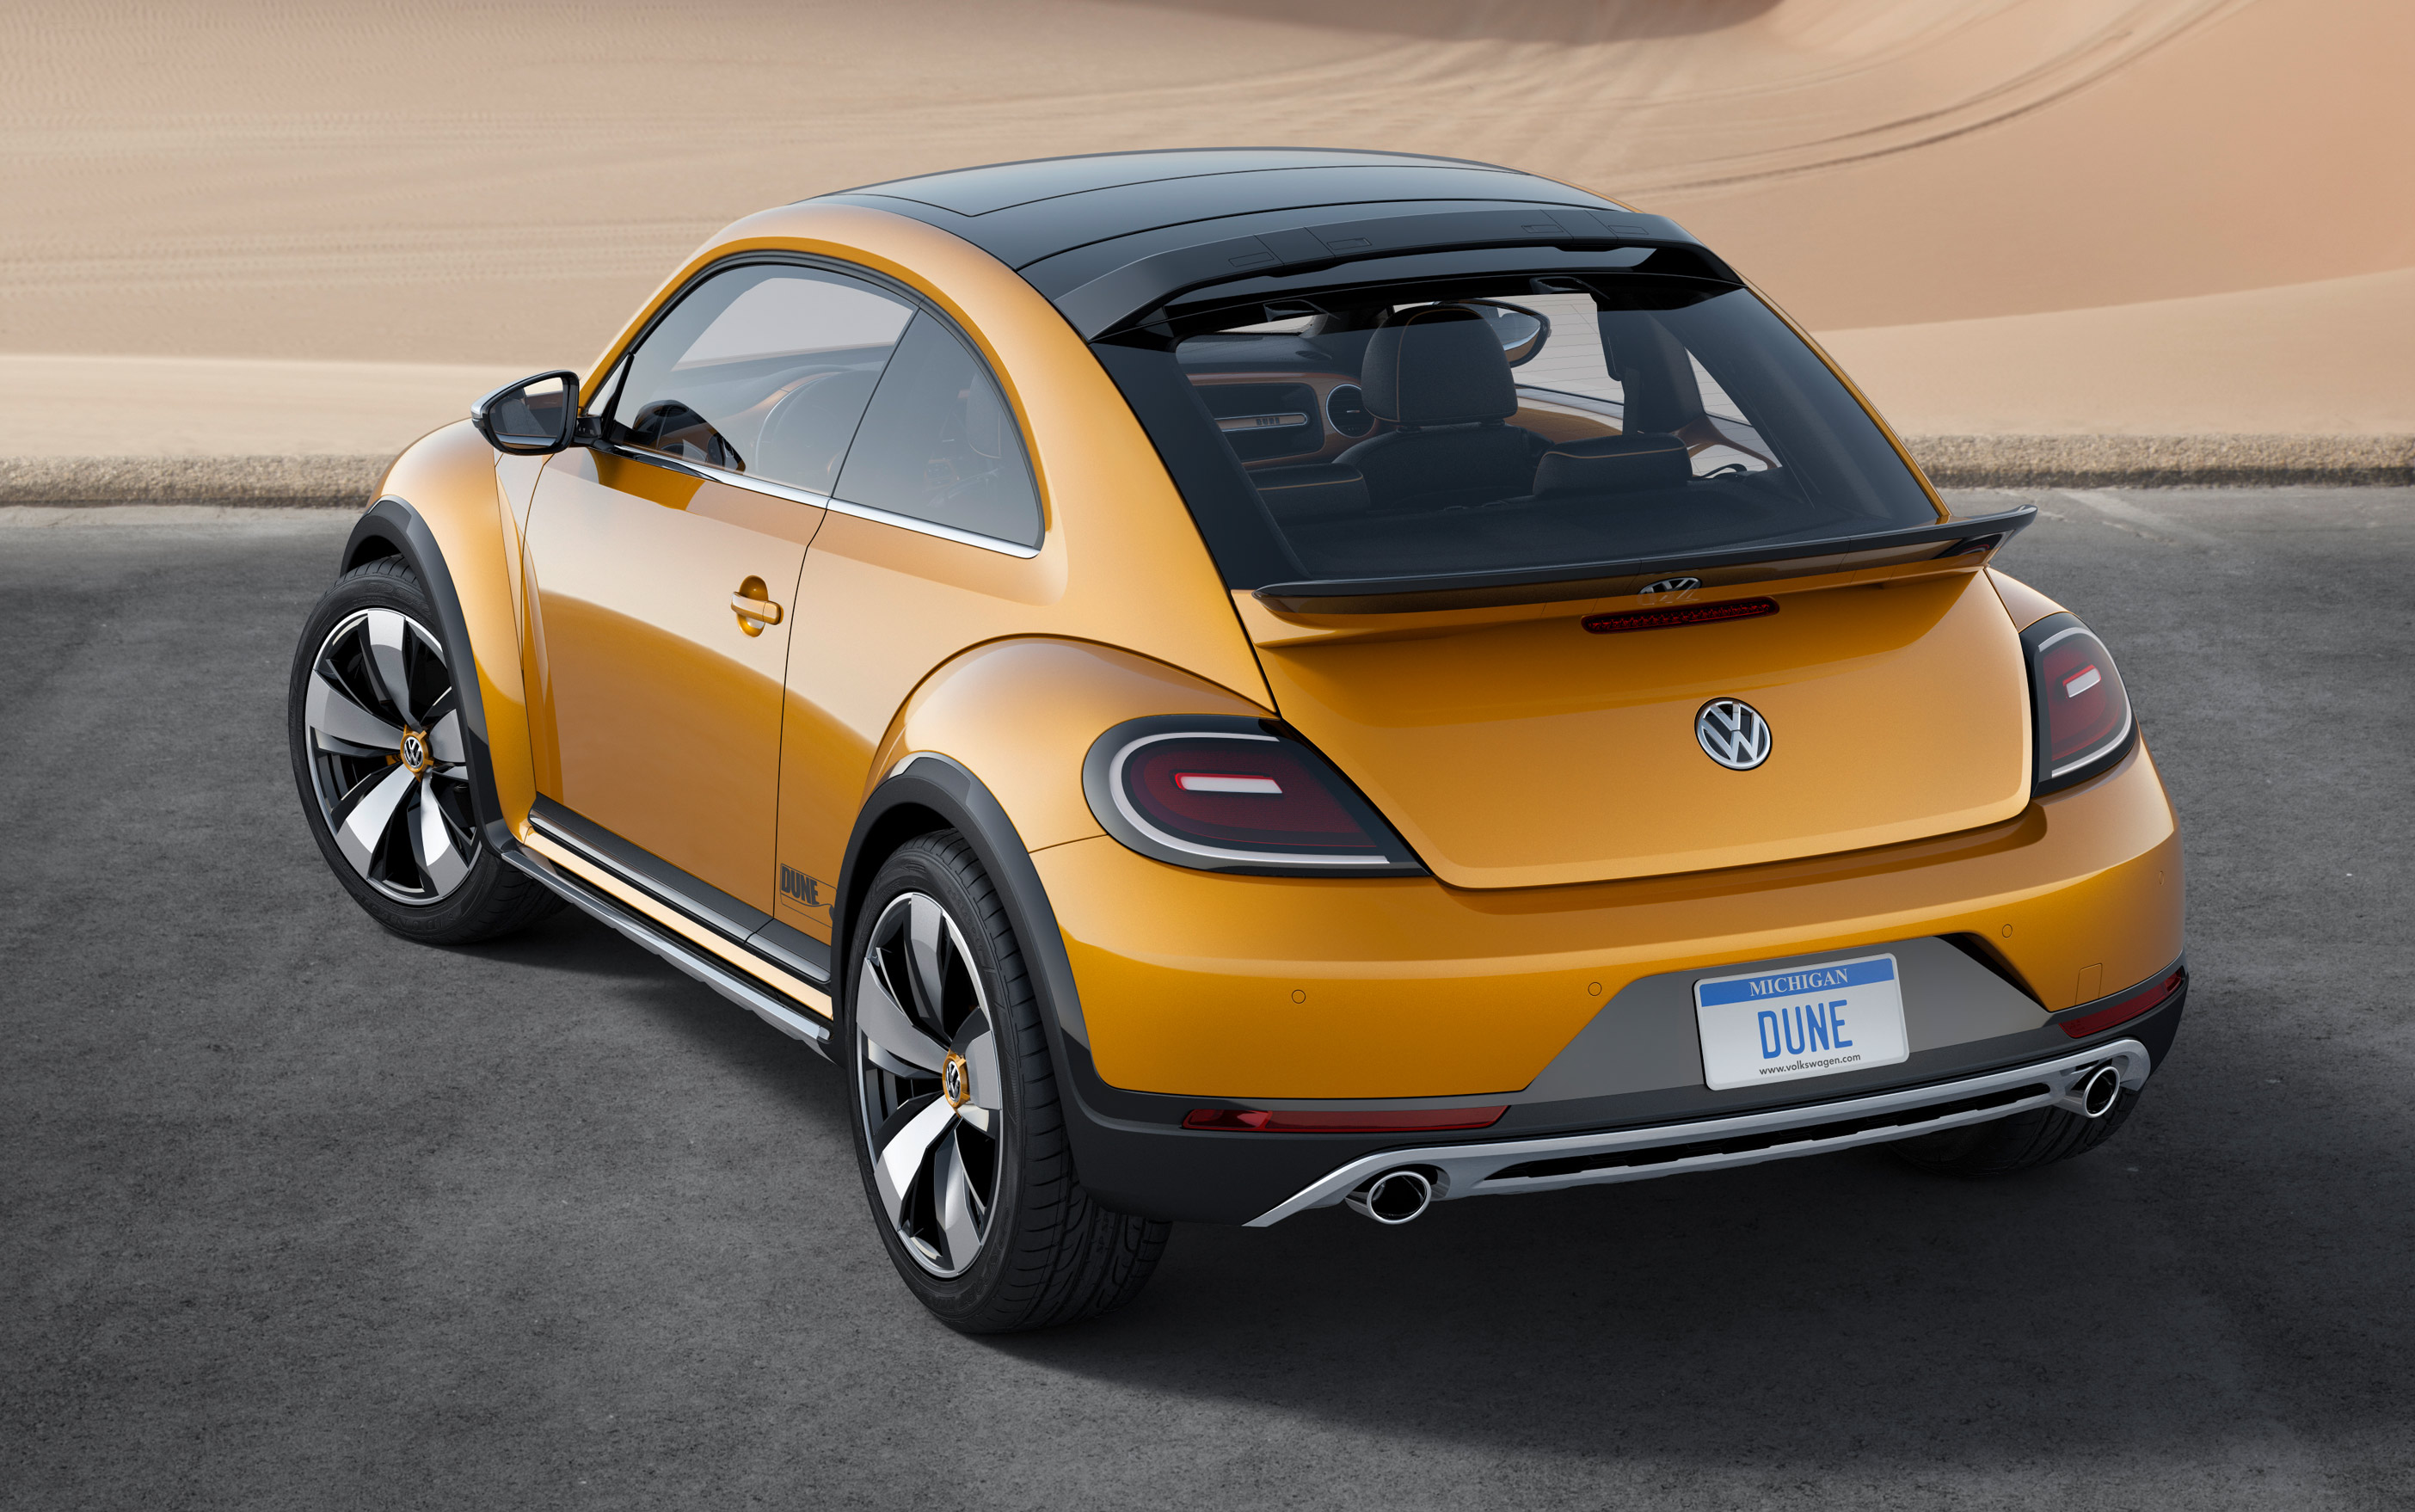 Volkswagen Dune Backgrounds on Wallpapers Vista